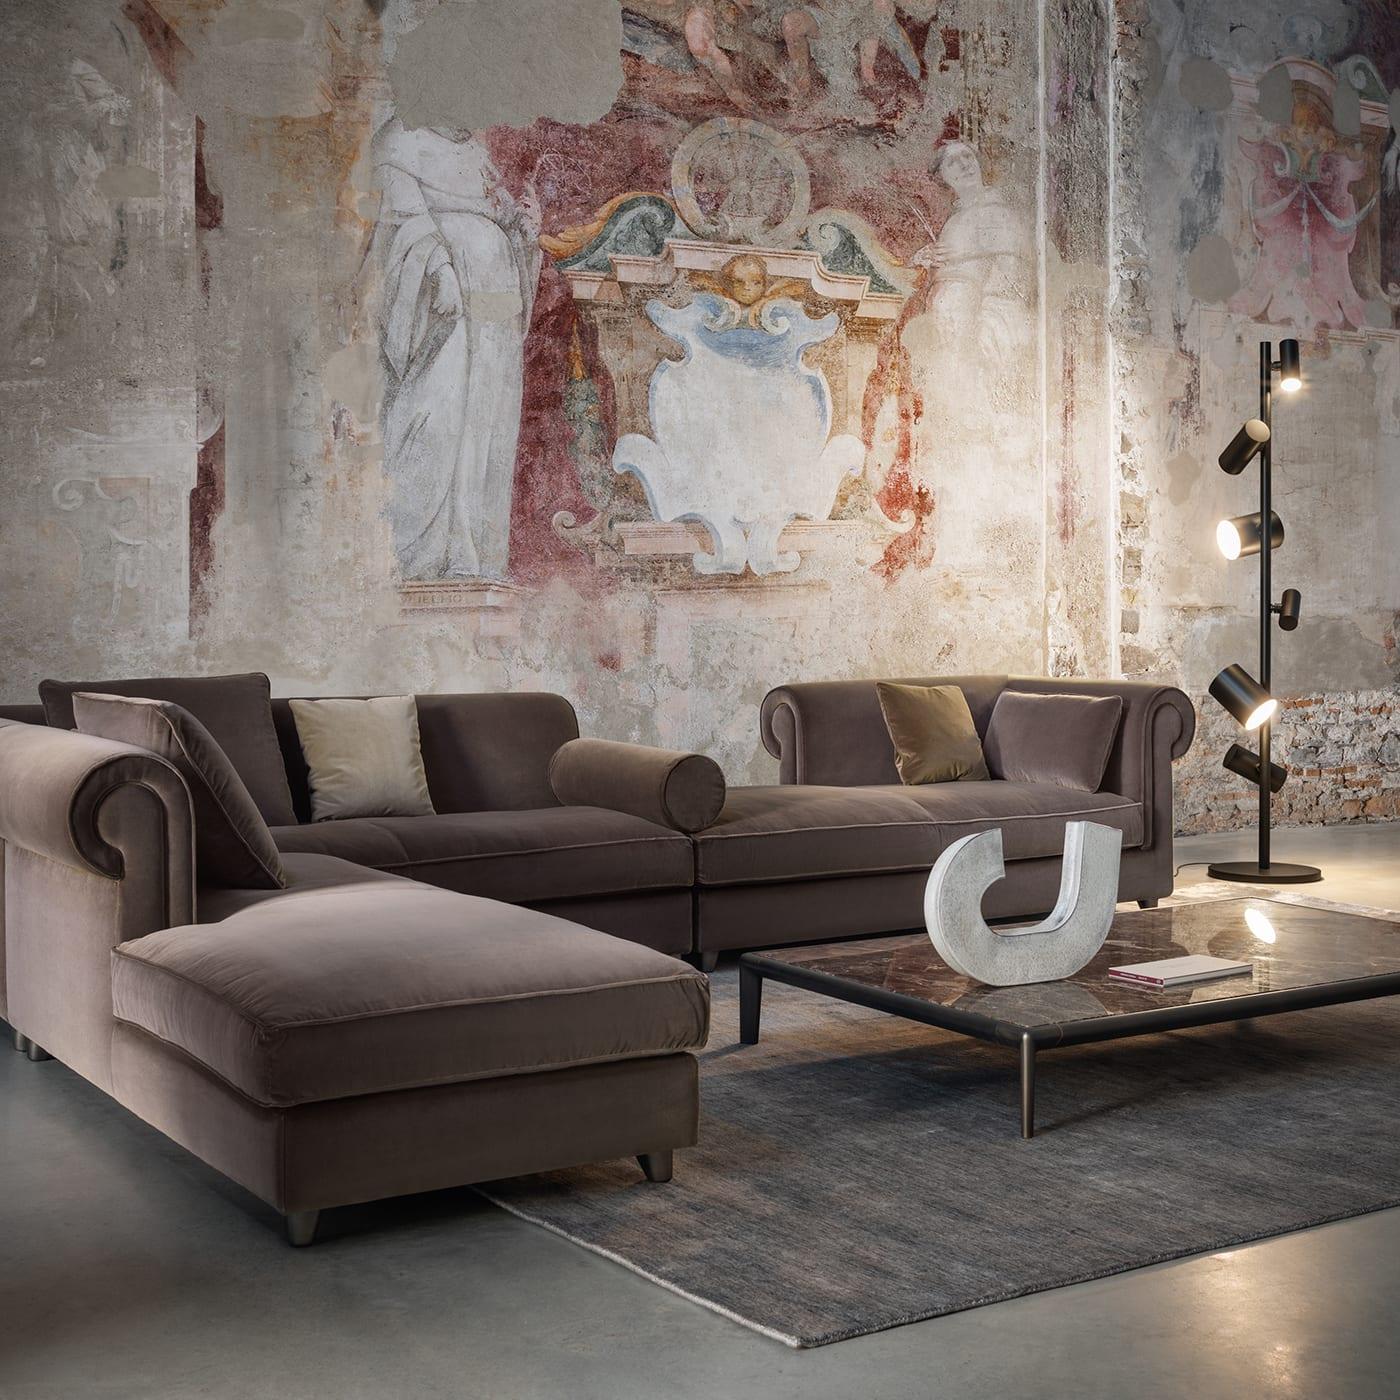 Benannt nach der berühmten Stadt an der italienischen Riviera und mit ihrem exklusiven Charme setzt dieses eckige Sofa einen stilvollen Akzent in weiten modernen Wohnräumen. Der neutrale Farbton seiner Stoffpolsterung macht ihn vielseitig und